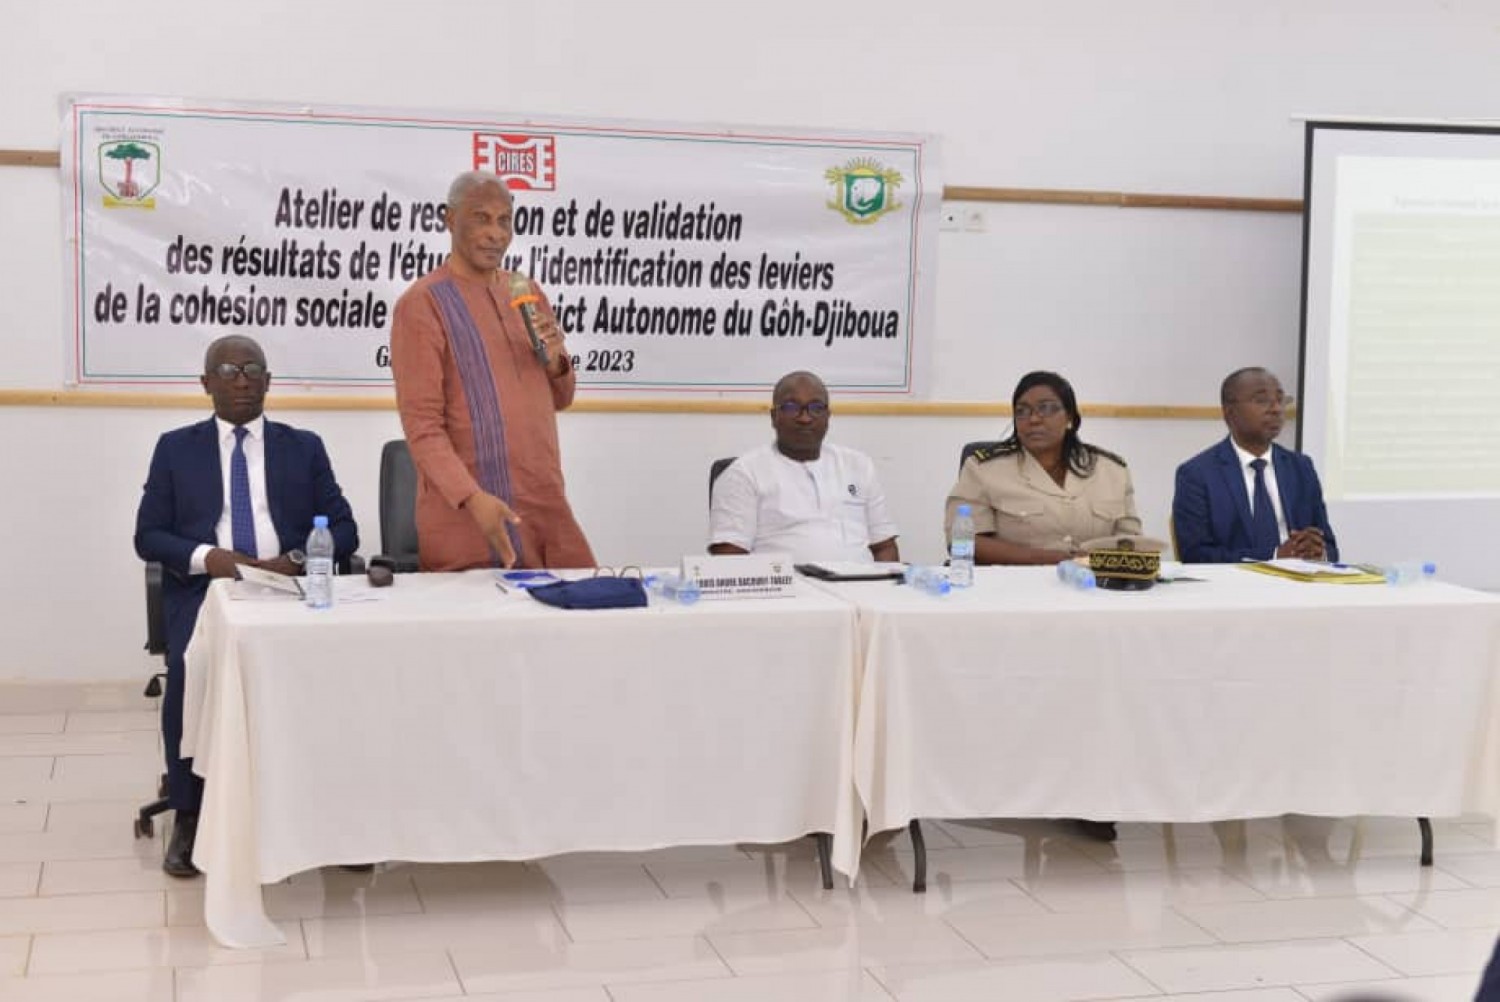 Côte d'Ivoire : Les résultats de l'étude de stratégie sur les leviers de consolidation de la cohésion sociale dans la région du Gôh-Djiboua sont connus